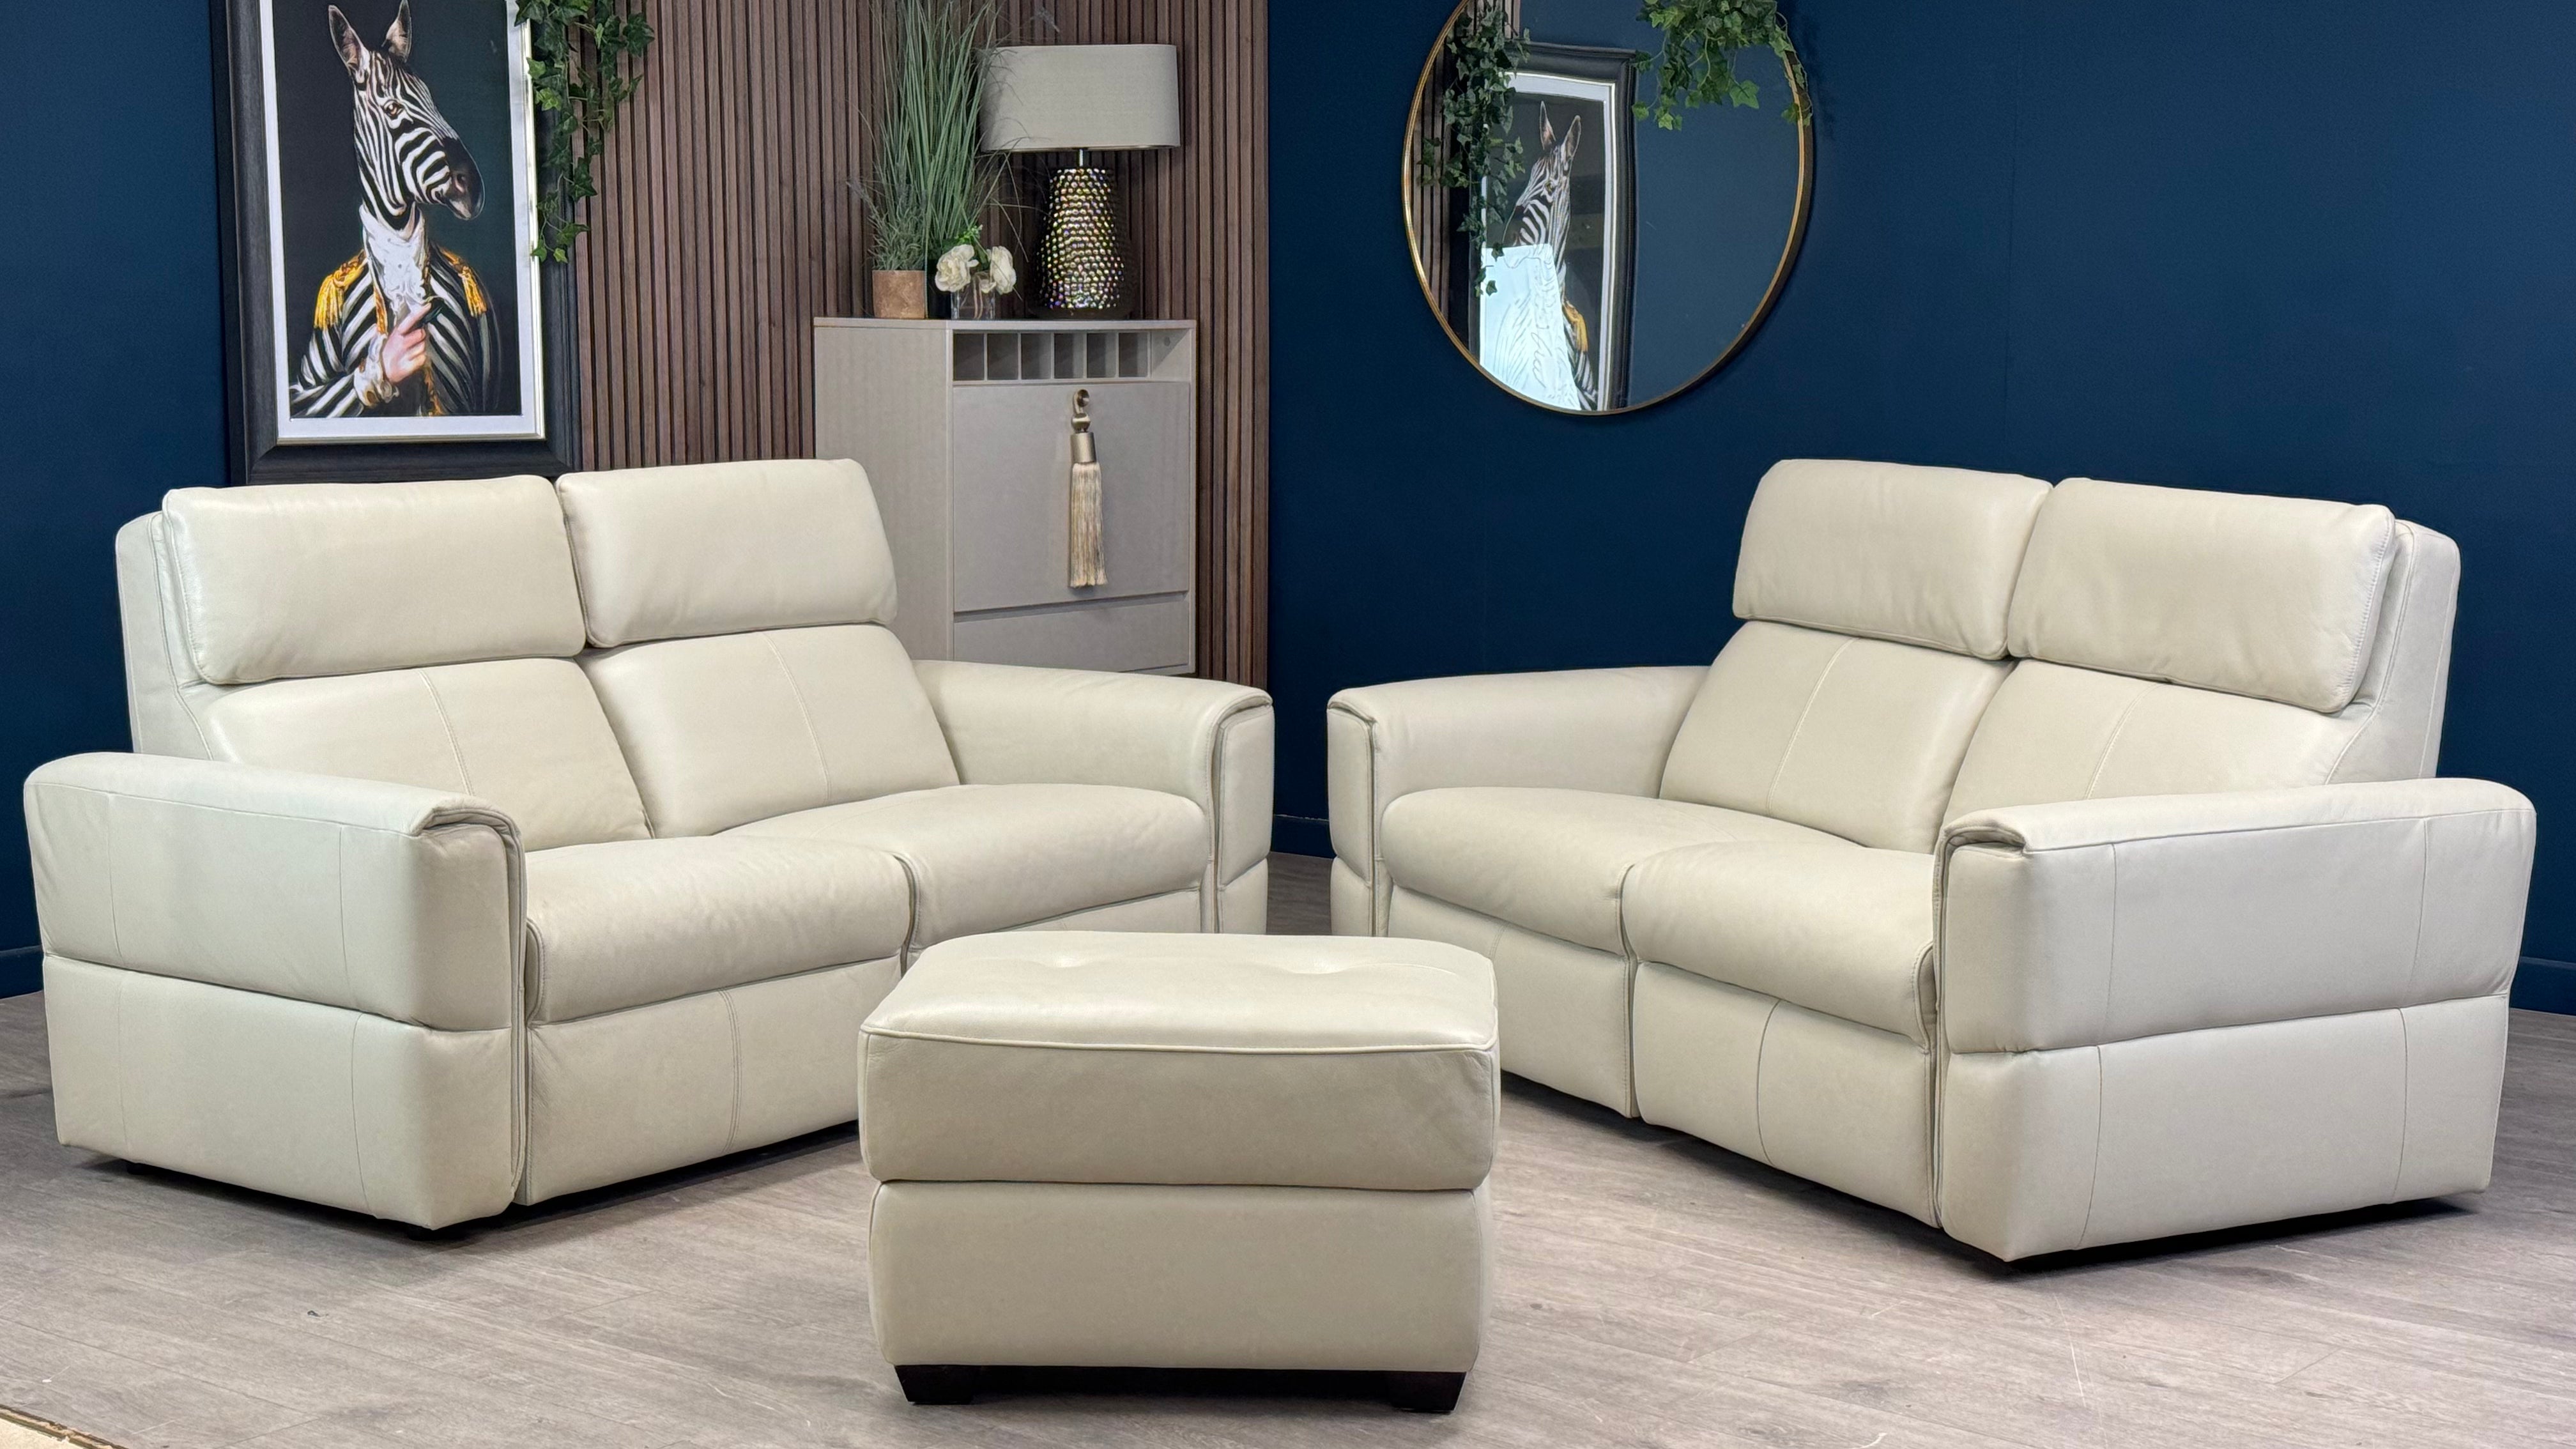 Samson Two x 2 Seater Stone Leather Sofas & Footstool - Oak Furnitureland